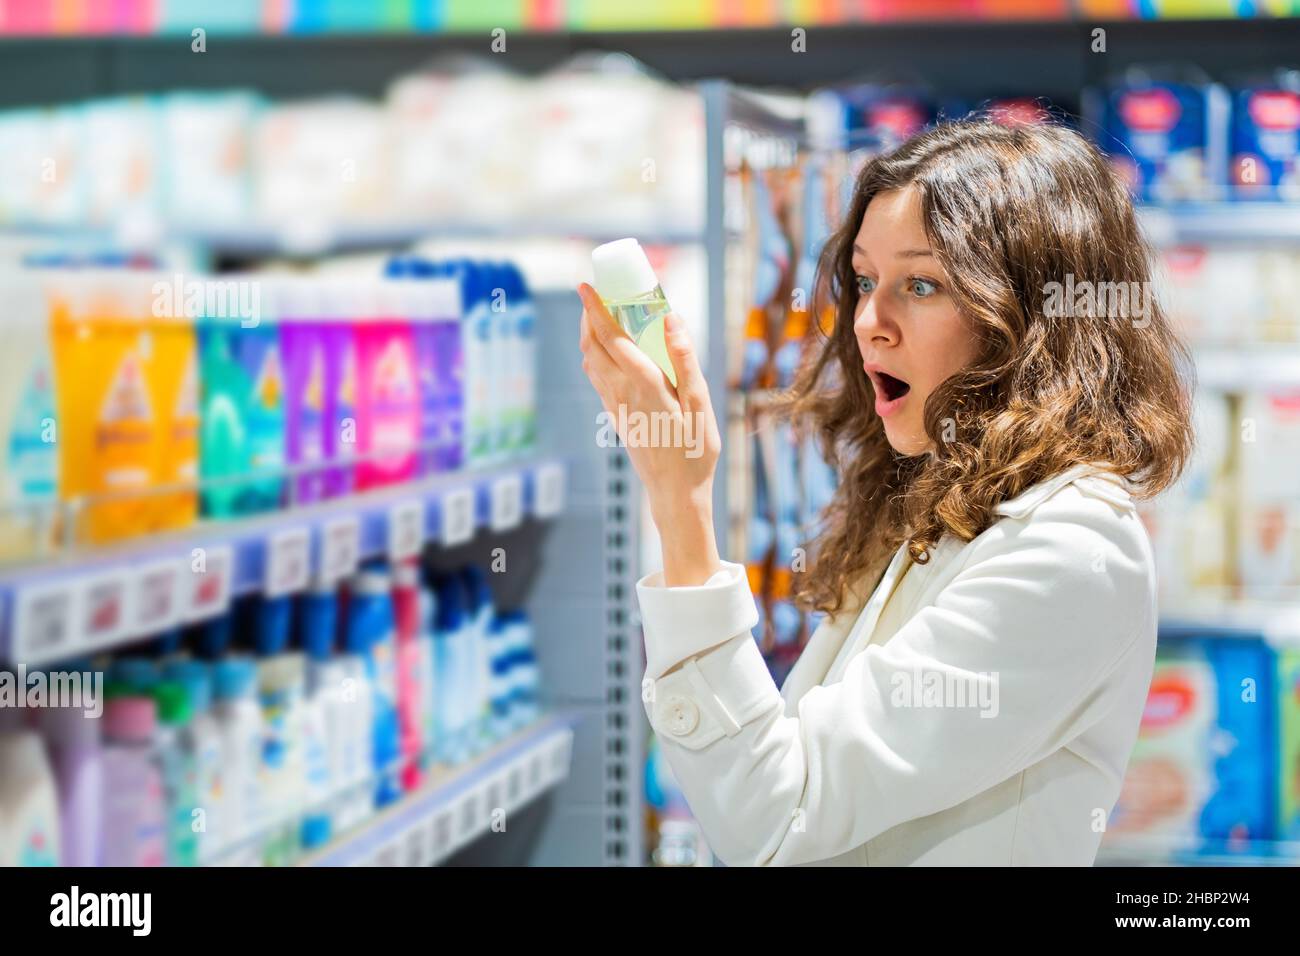 donna al supermercato che legge l'etichetta in shock dalla composizione del baby shampoo, emozione di spiacevole sorpresa Foto Stock